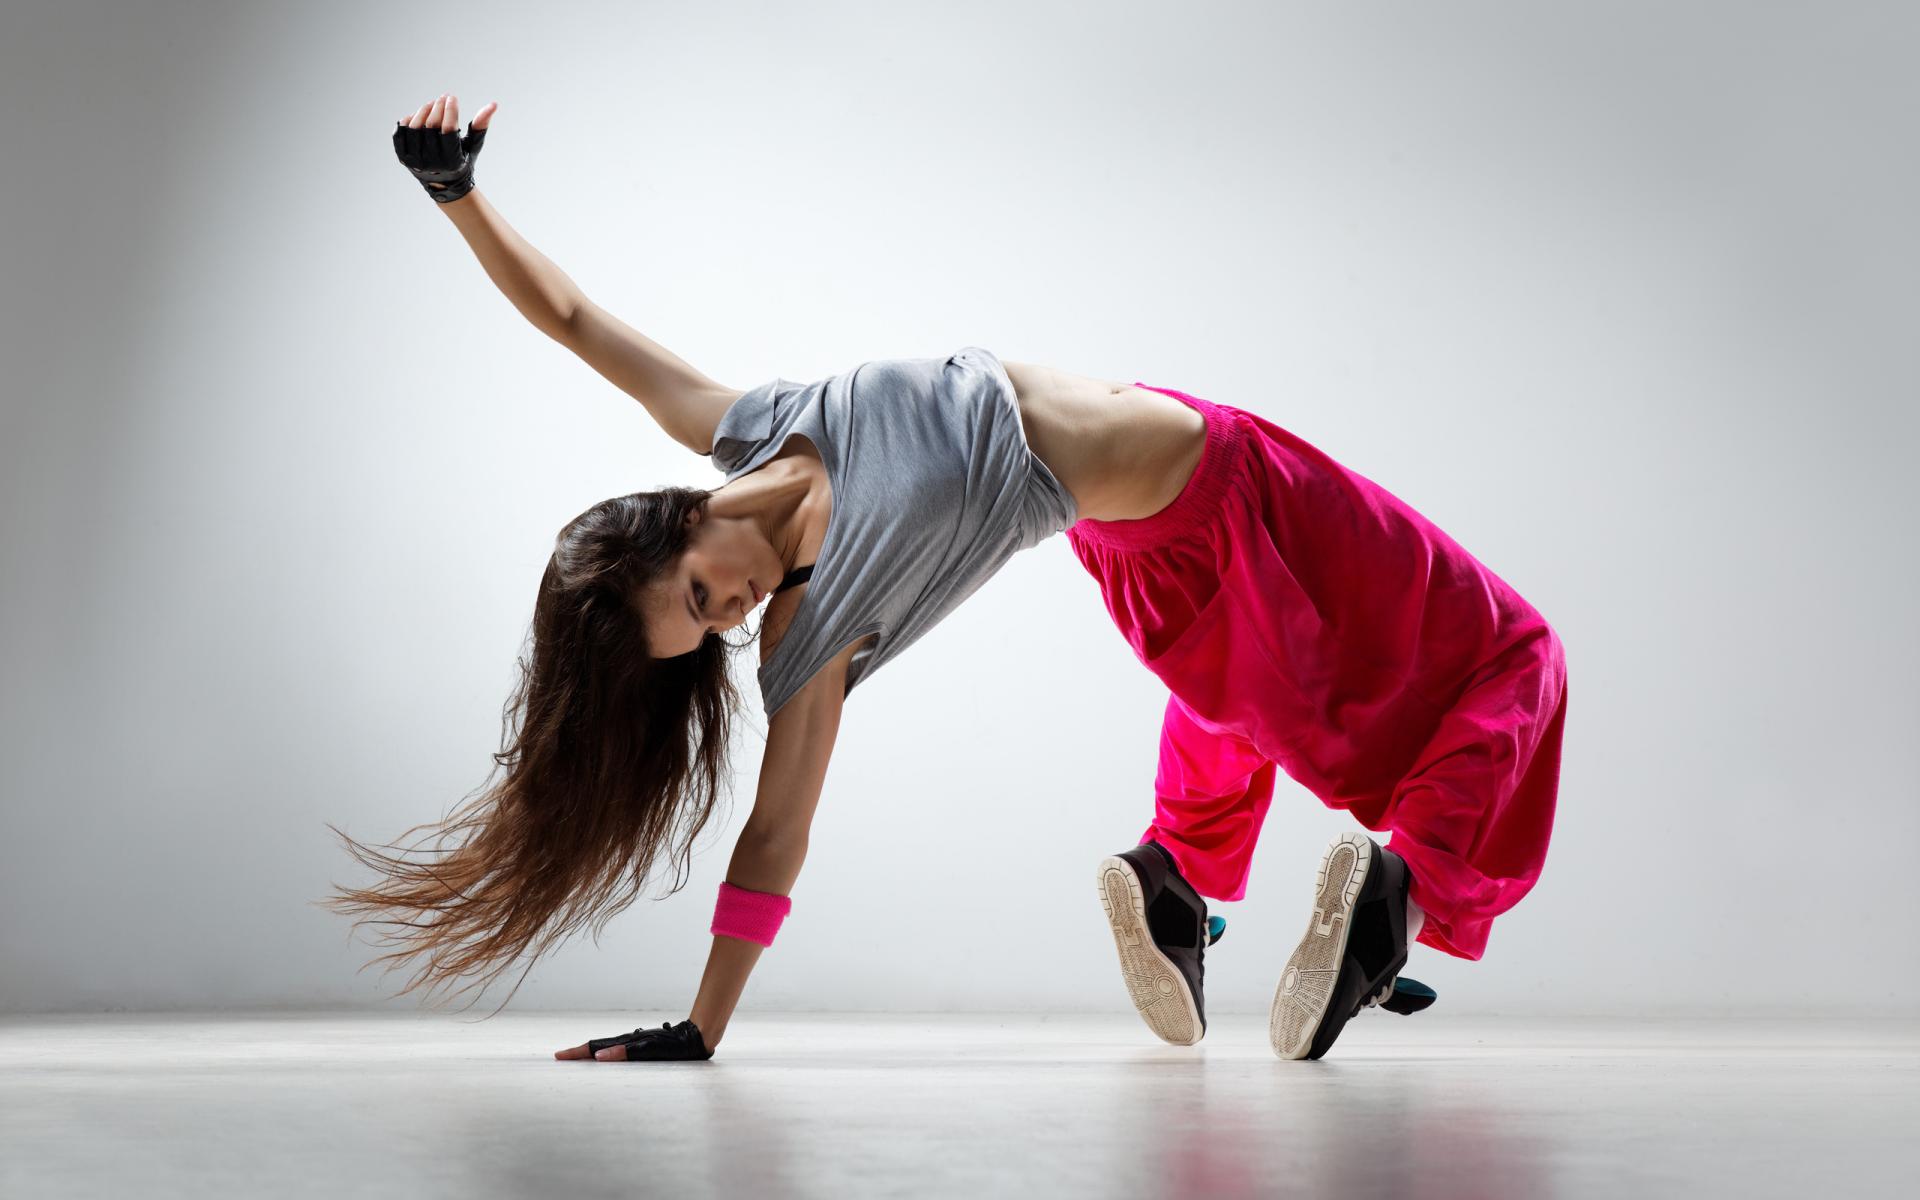 ცეკვა ტვინის დაბერების პროცესს აფერხებს - ახალი კვლევის შედეგი